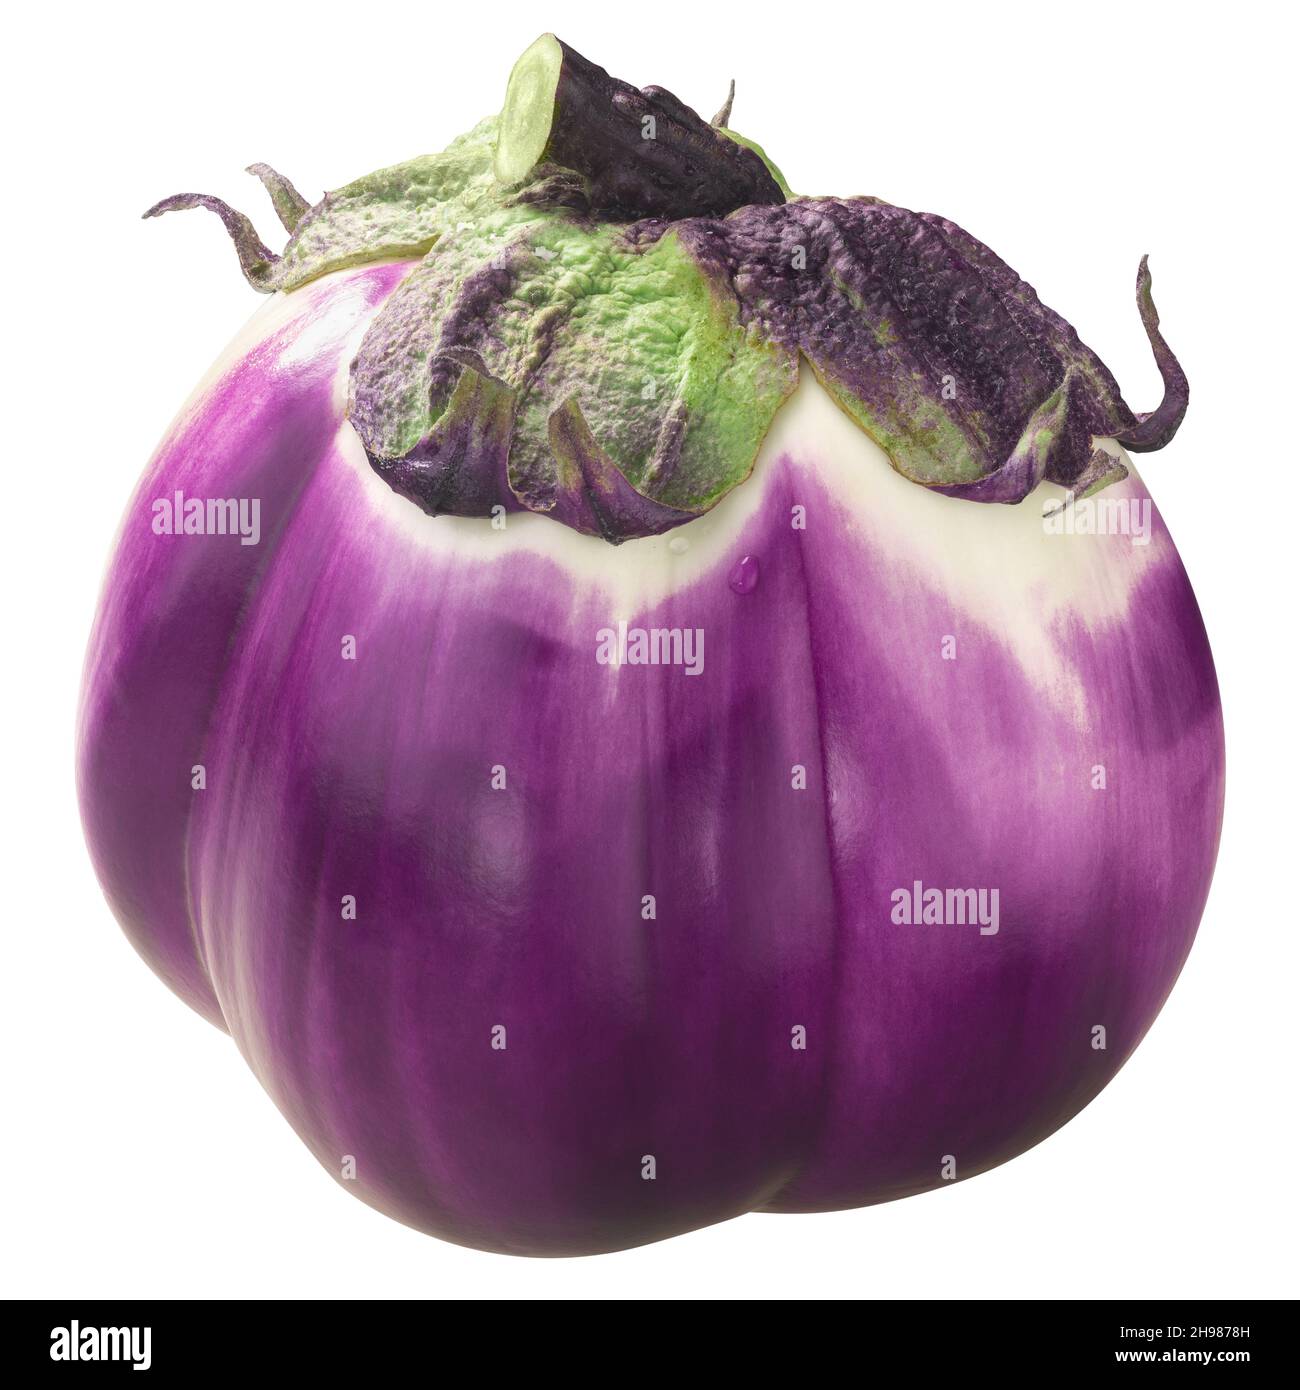 Violet white ribbed aubergine or eggplant (Solanum melongena fruit) isolated Stock Photo